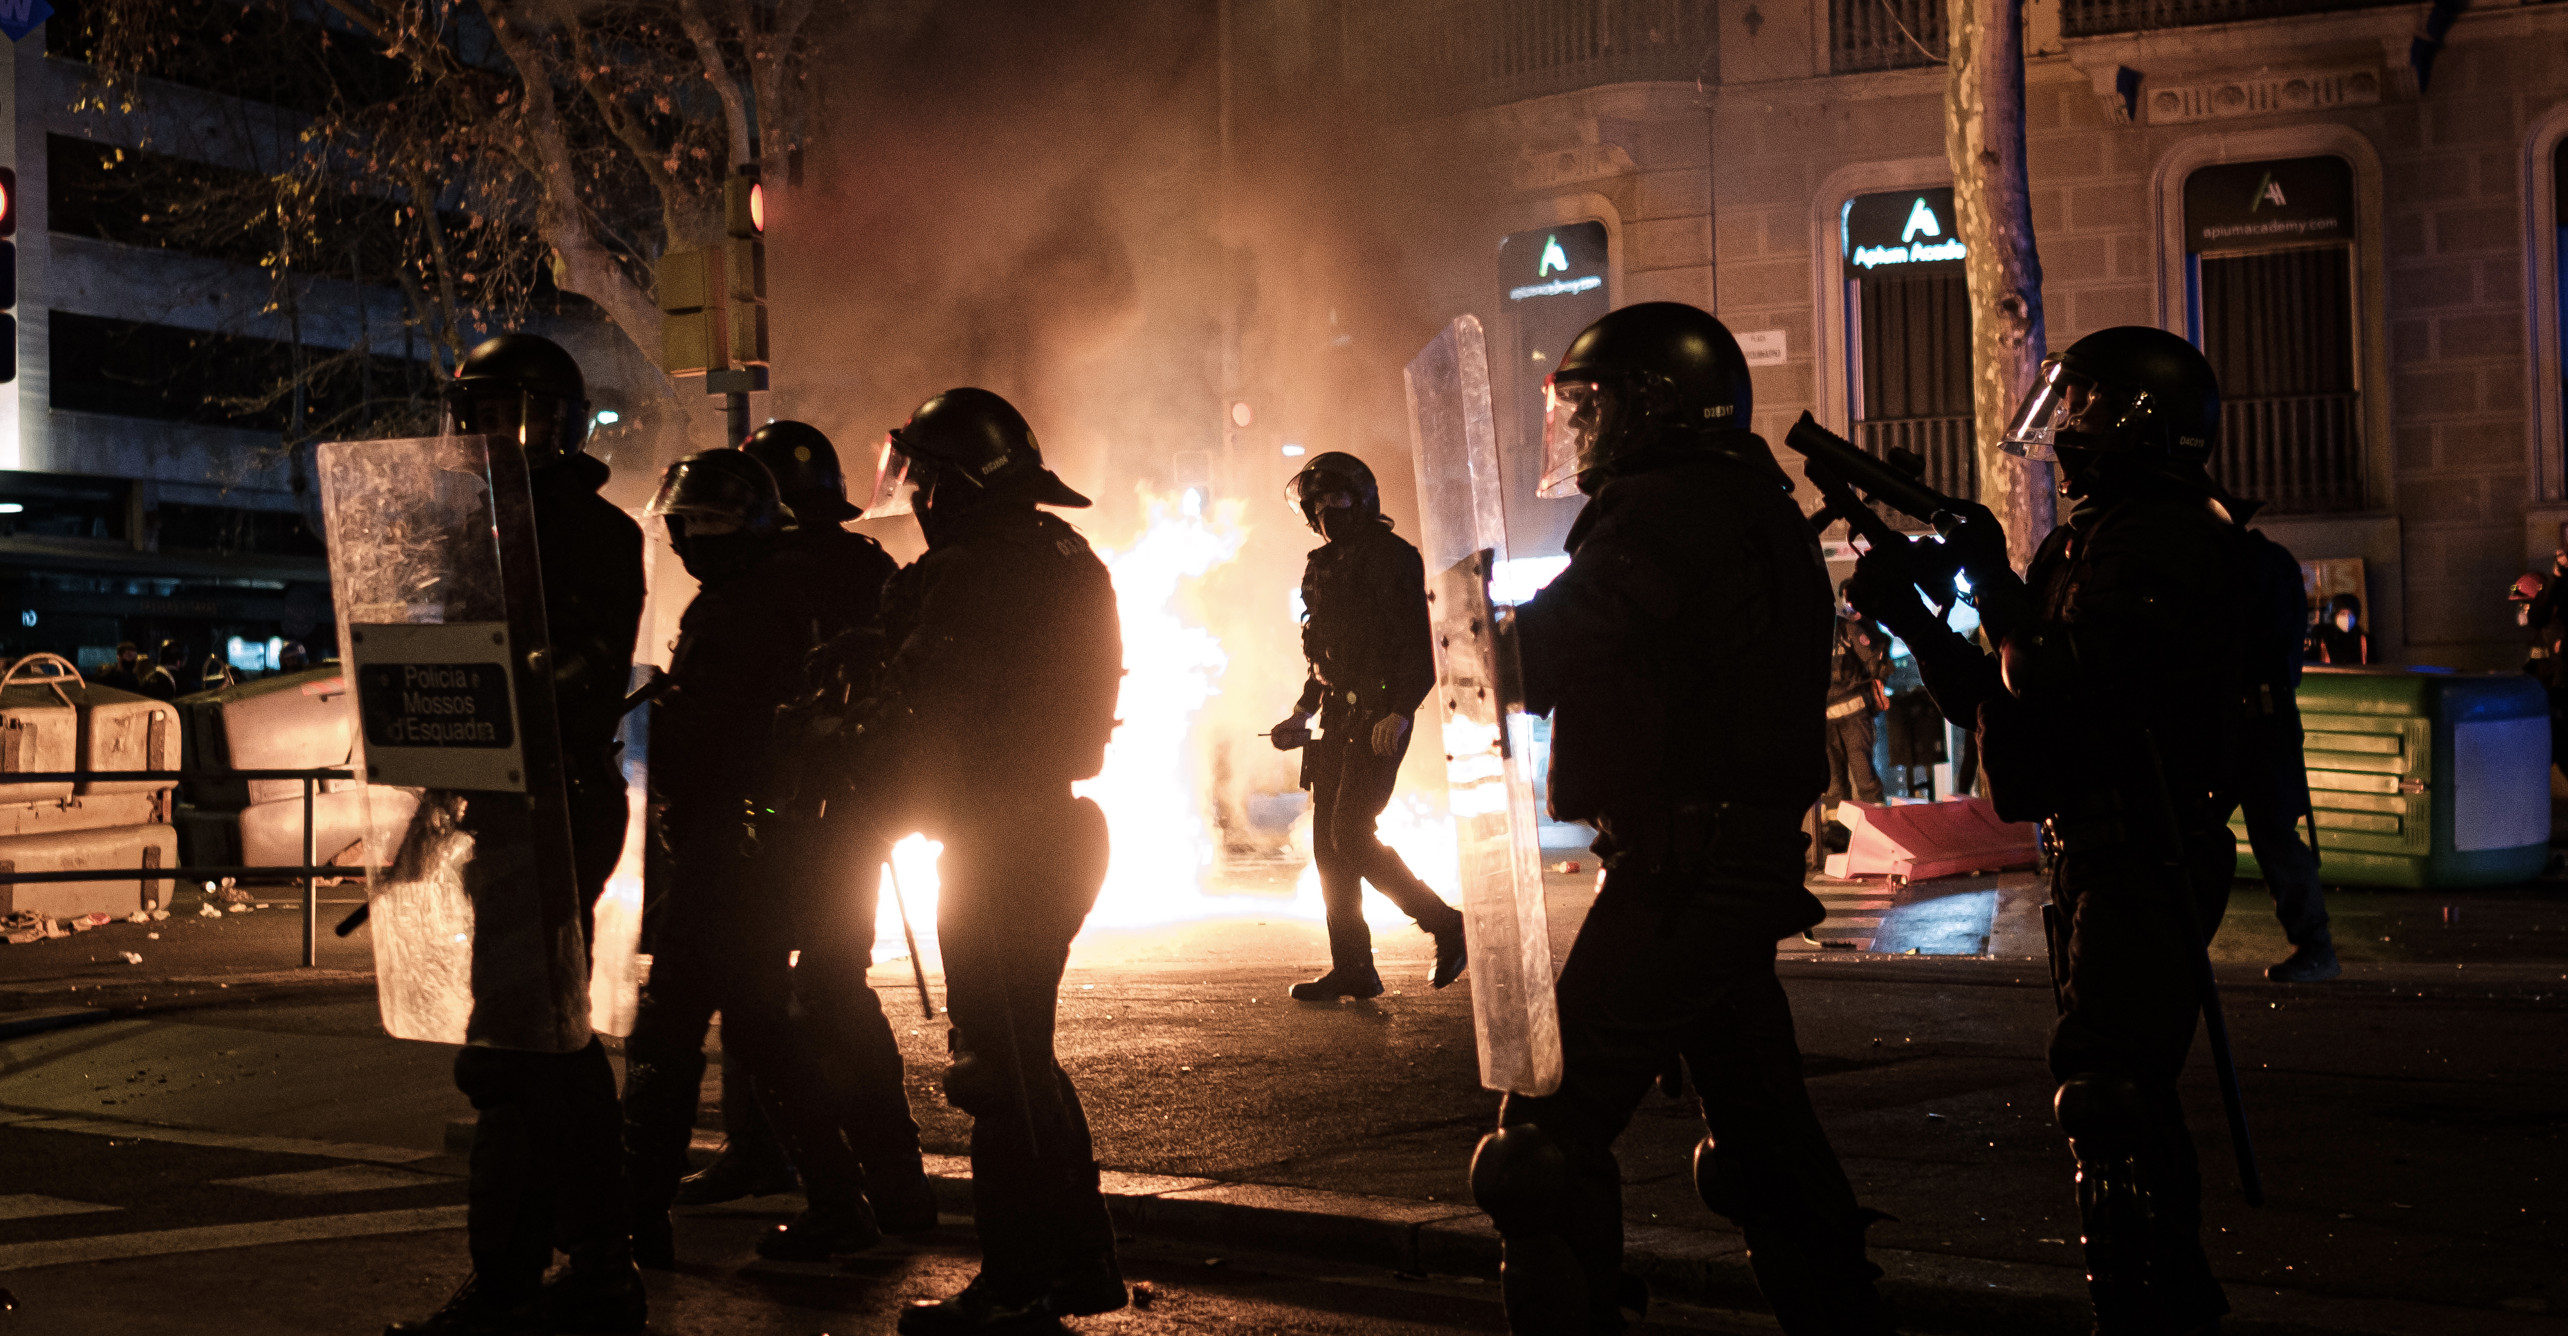 Agentes de Mossos d'Esquadra durante la segunda noche de disturbios por Hasél en Barcelona / PABLO MIRANZO (CG)